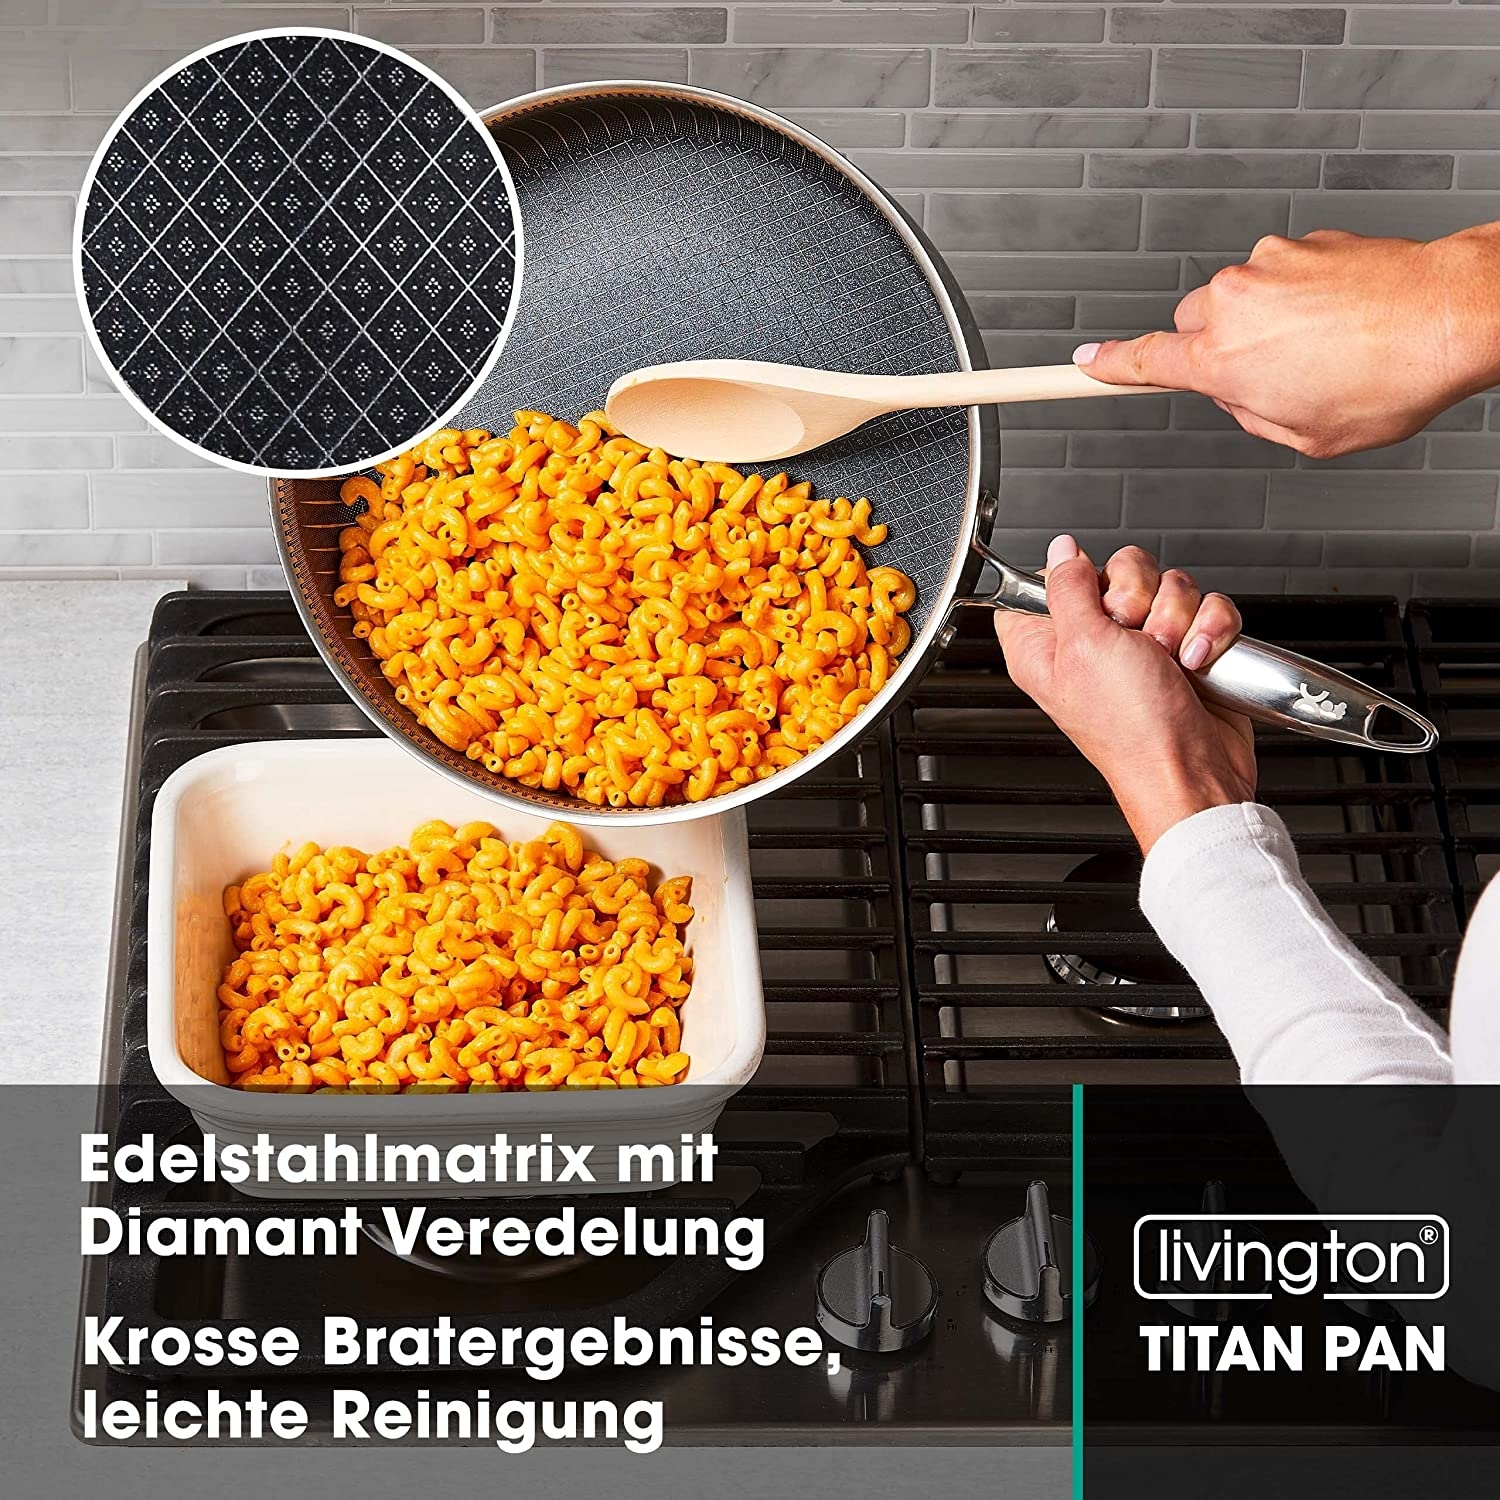 LIVINGTON Titan Beschichtung: Pan (Aluminium, Beschichtung) 24cm Pfanne Sonstige